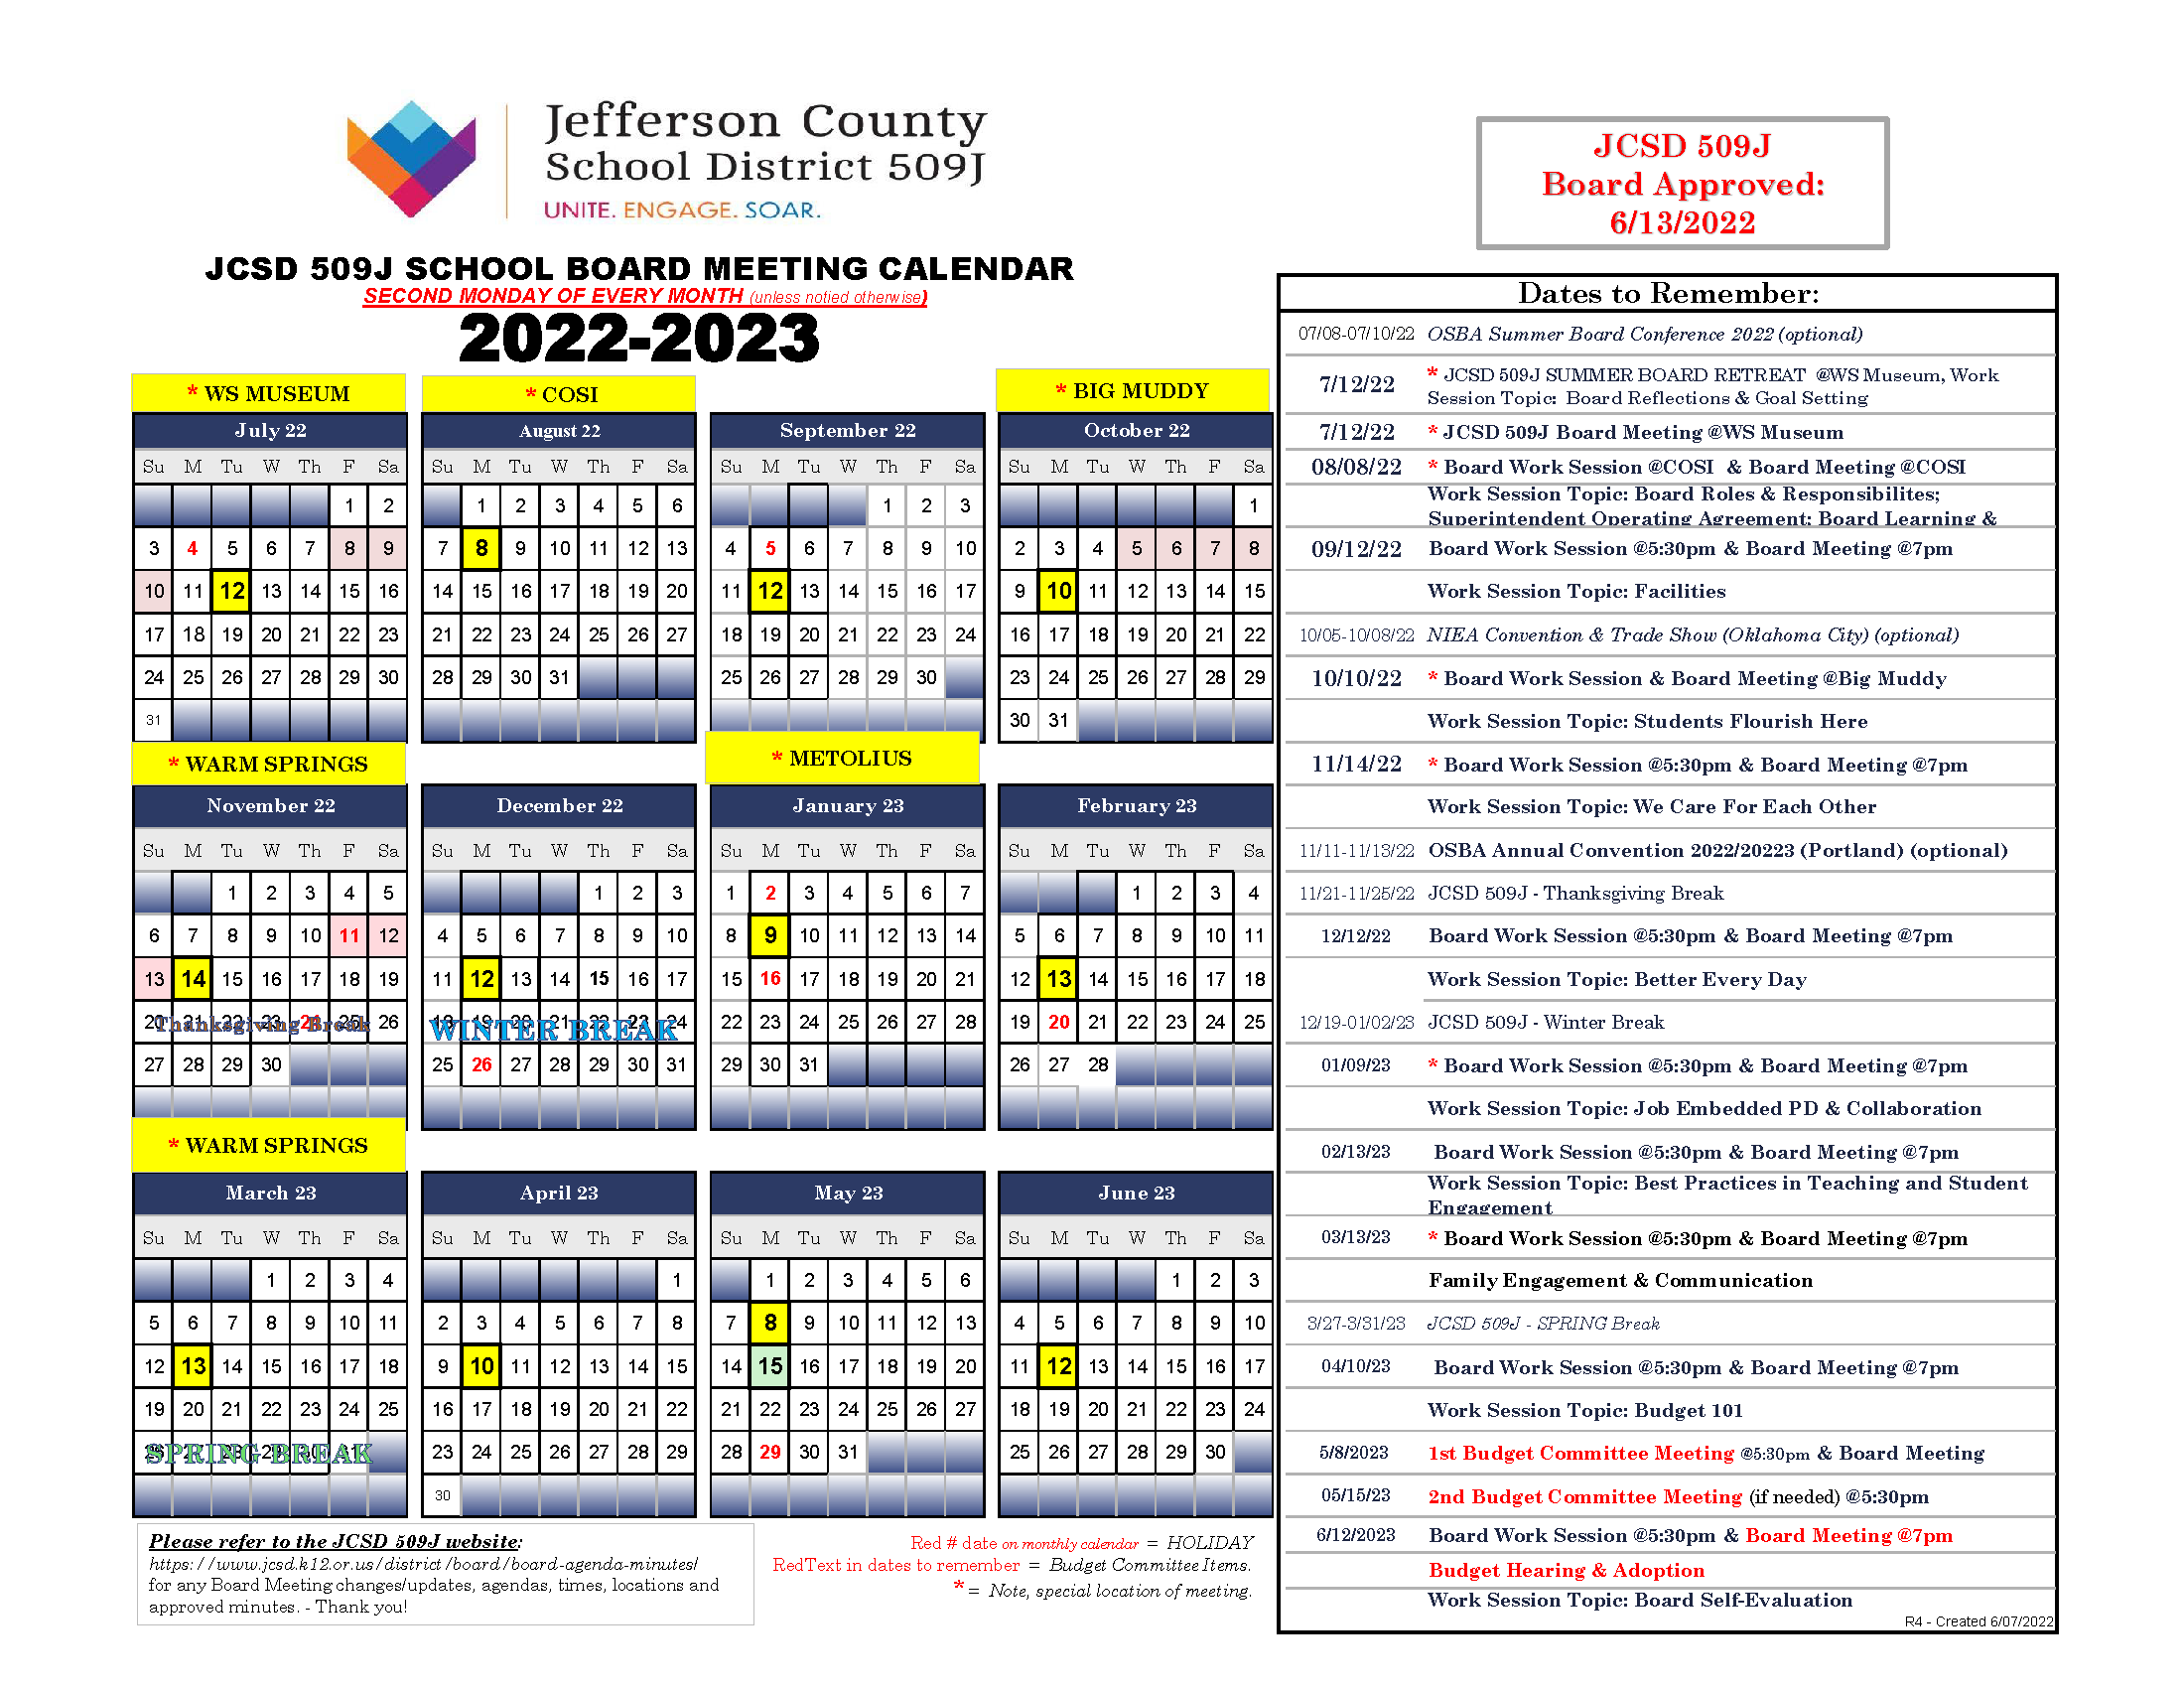 Board Calendar | Jefferson County School District 509J